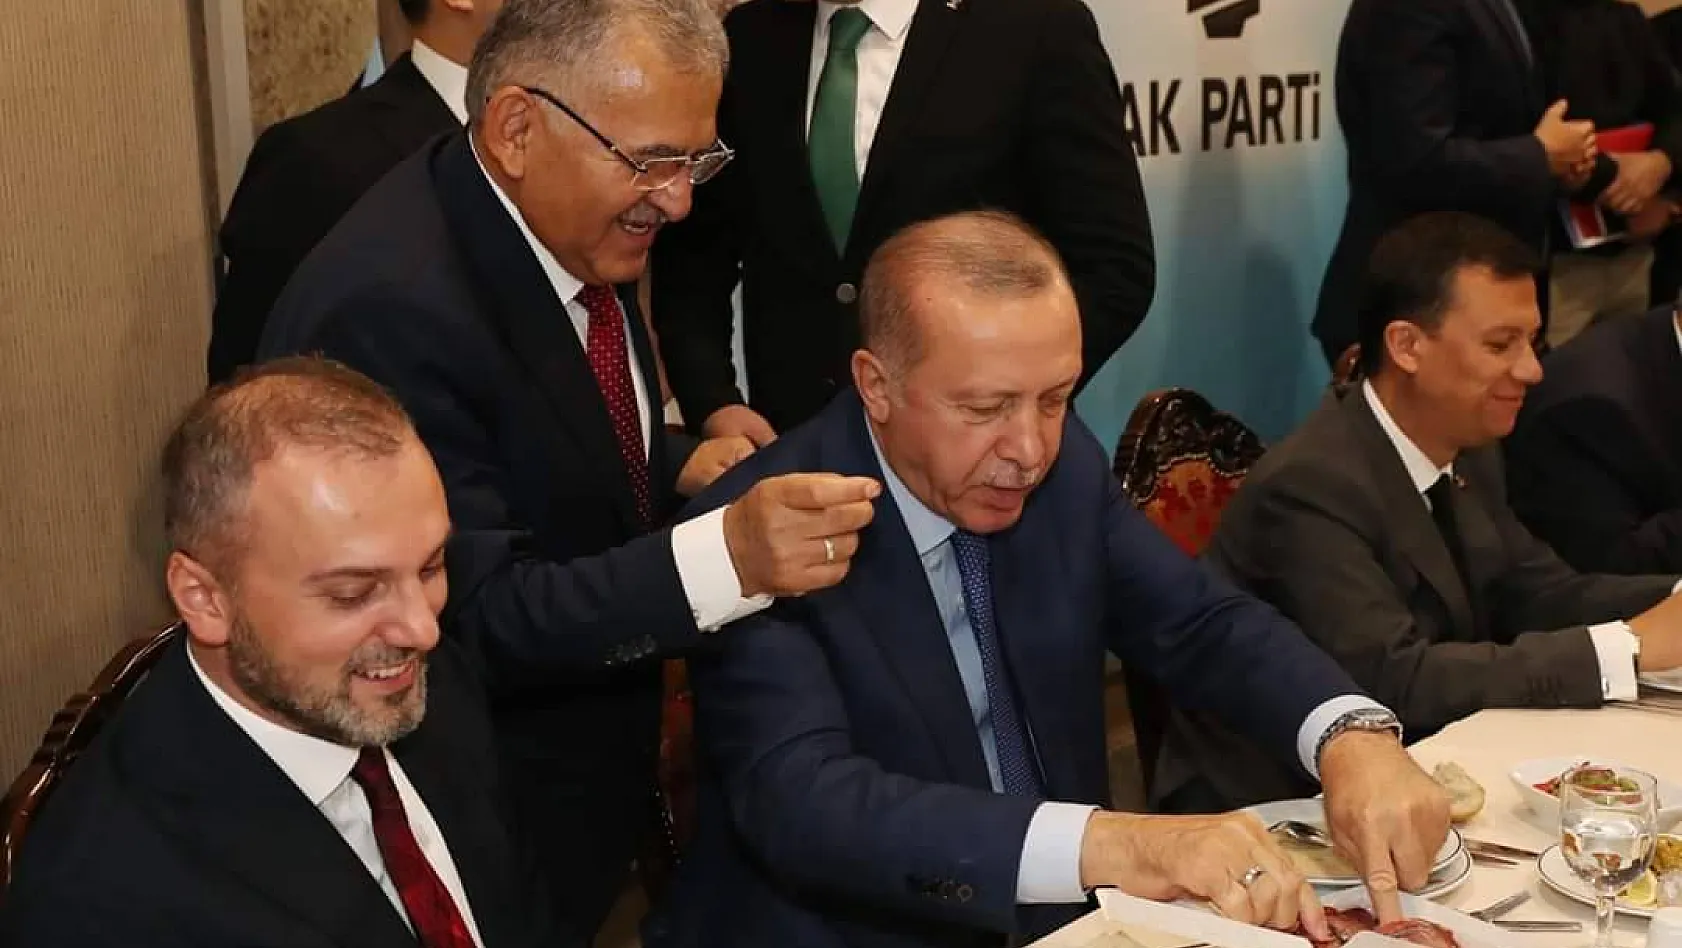 Cumhurbaşkanı Erdoğan Özhaseki`ye `Kastamonu pastırması sizin pastırmadan daha iyi Mehmet` demiş